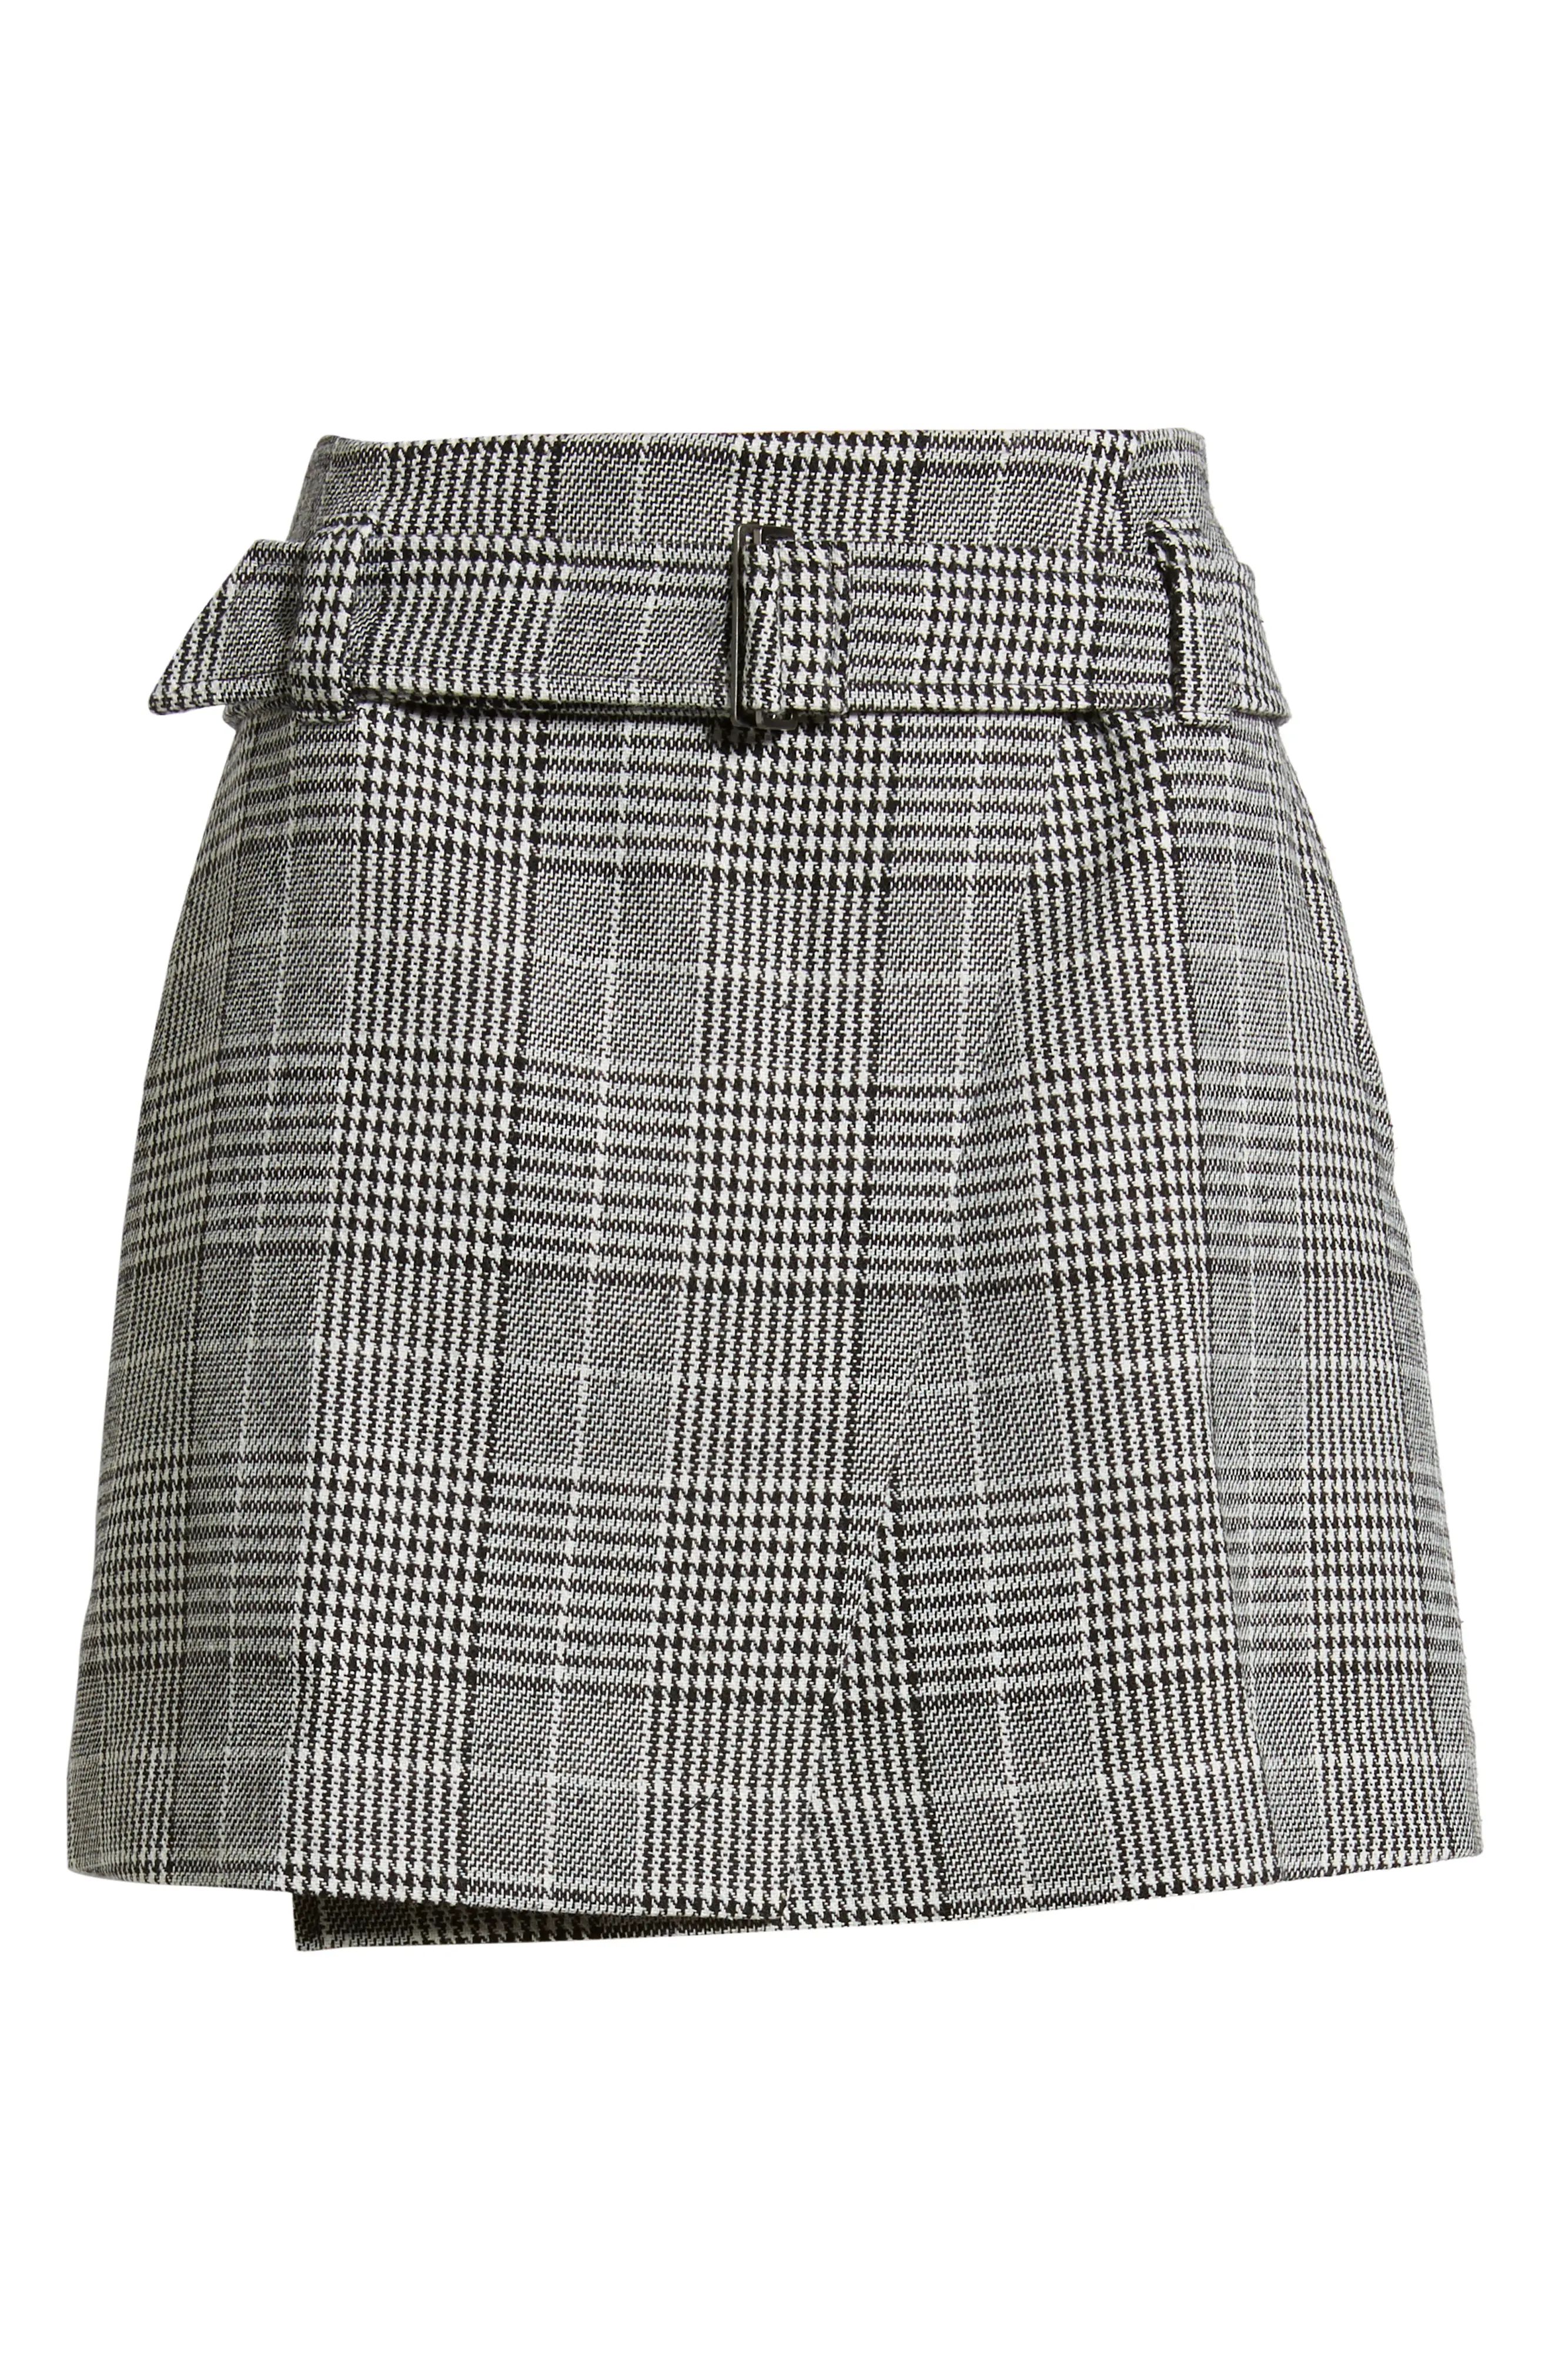 Plaid Miniskirt | Nordstrom